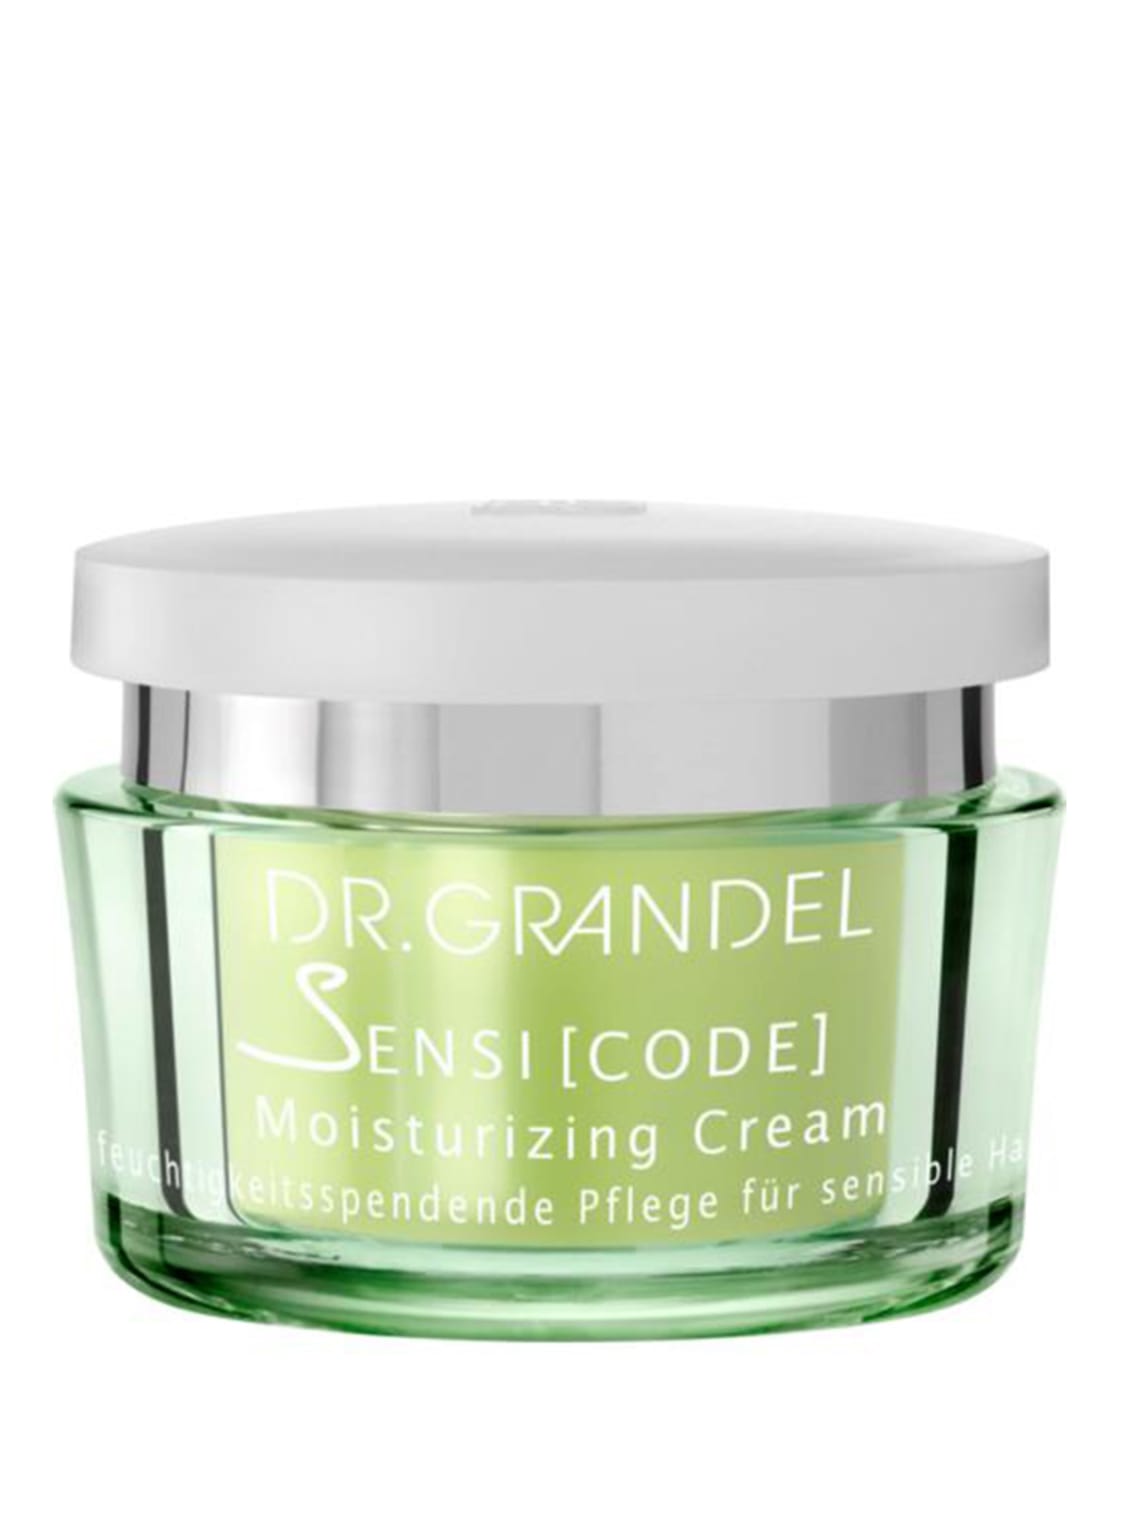 Dr. Grandel Sensicode - Moisturizing Cream Gesichtscreme 50 ml von DR. GRANDEL